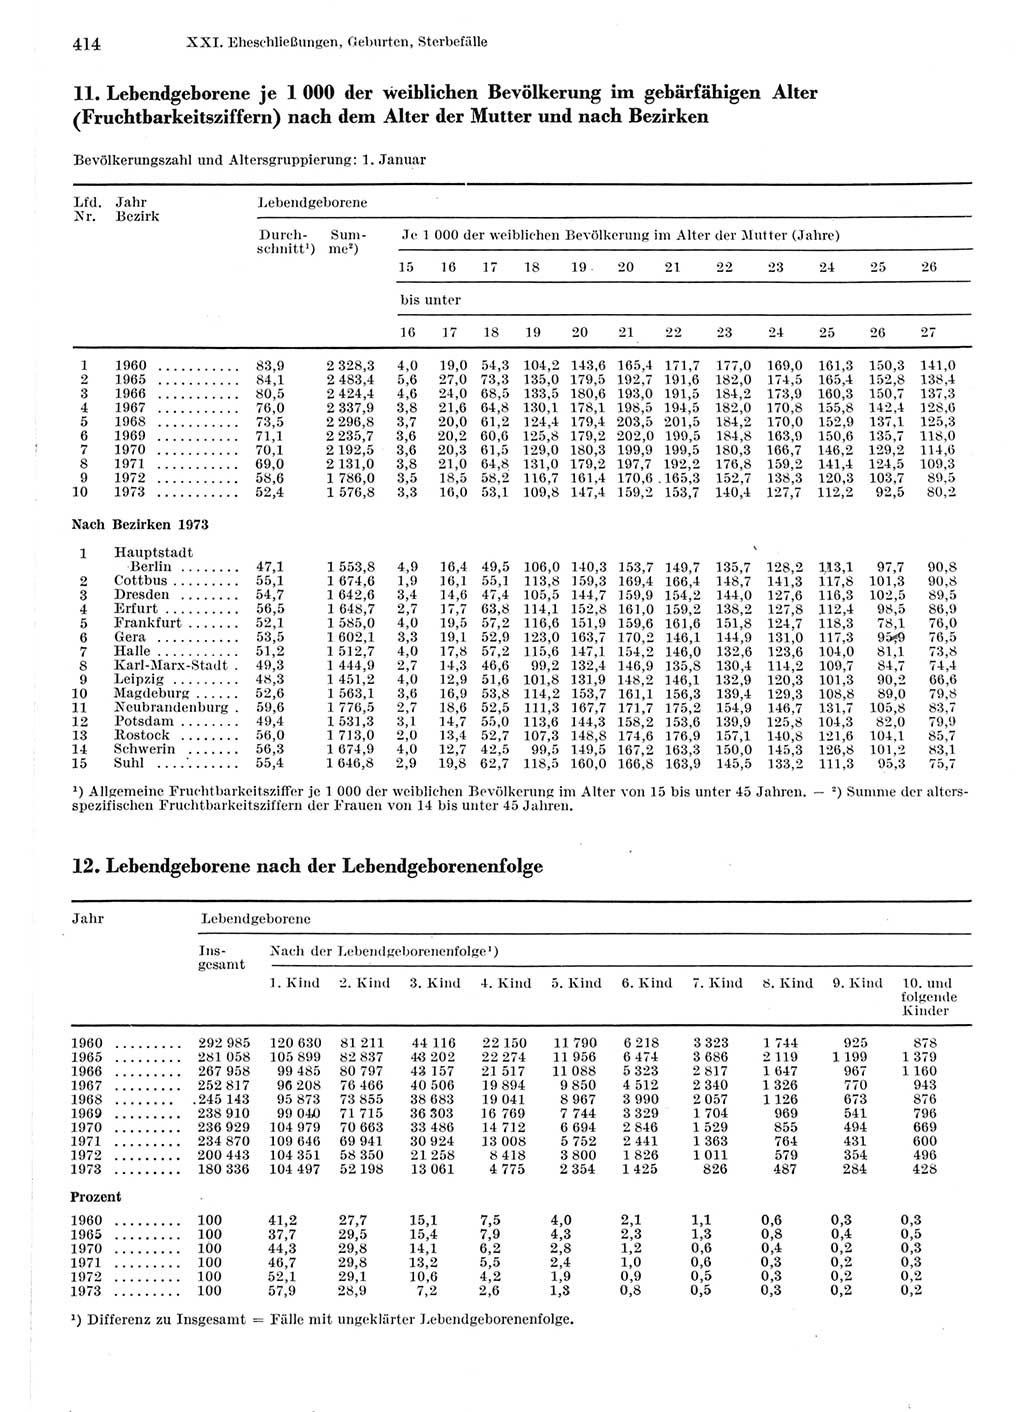 Statistisches Jahrbuch der Deutschen Demokratischen Republik (DDR) 1975, Seite 414 (Stat. Jb. DDR 1975, S. 414)